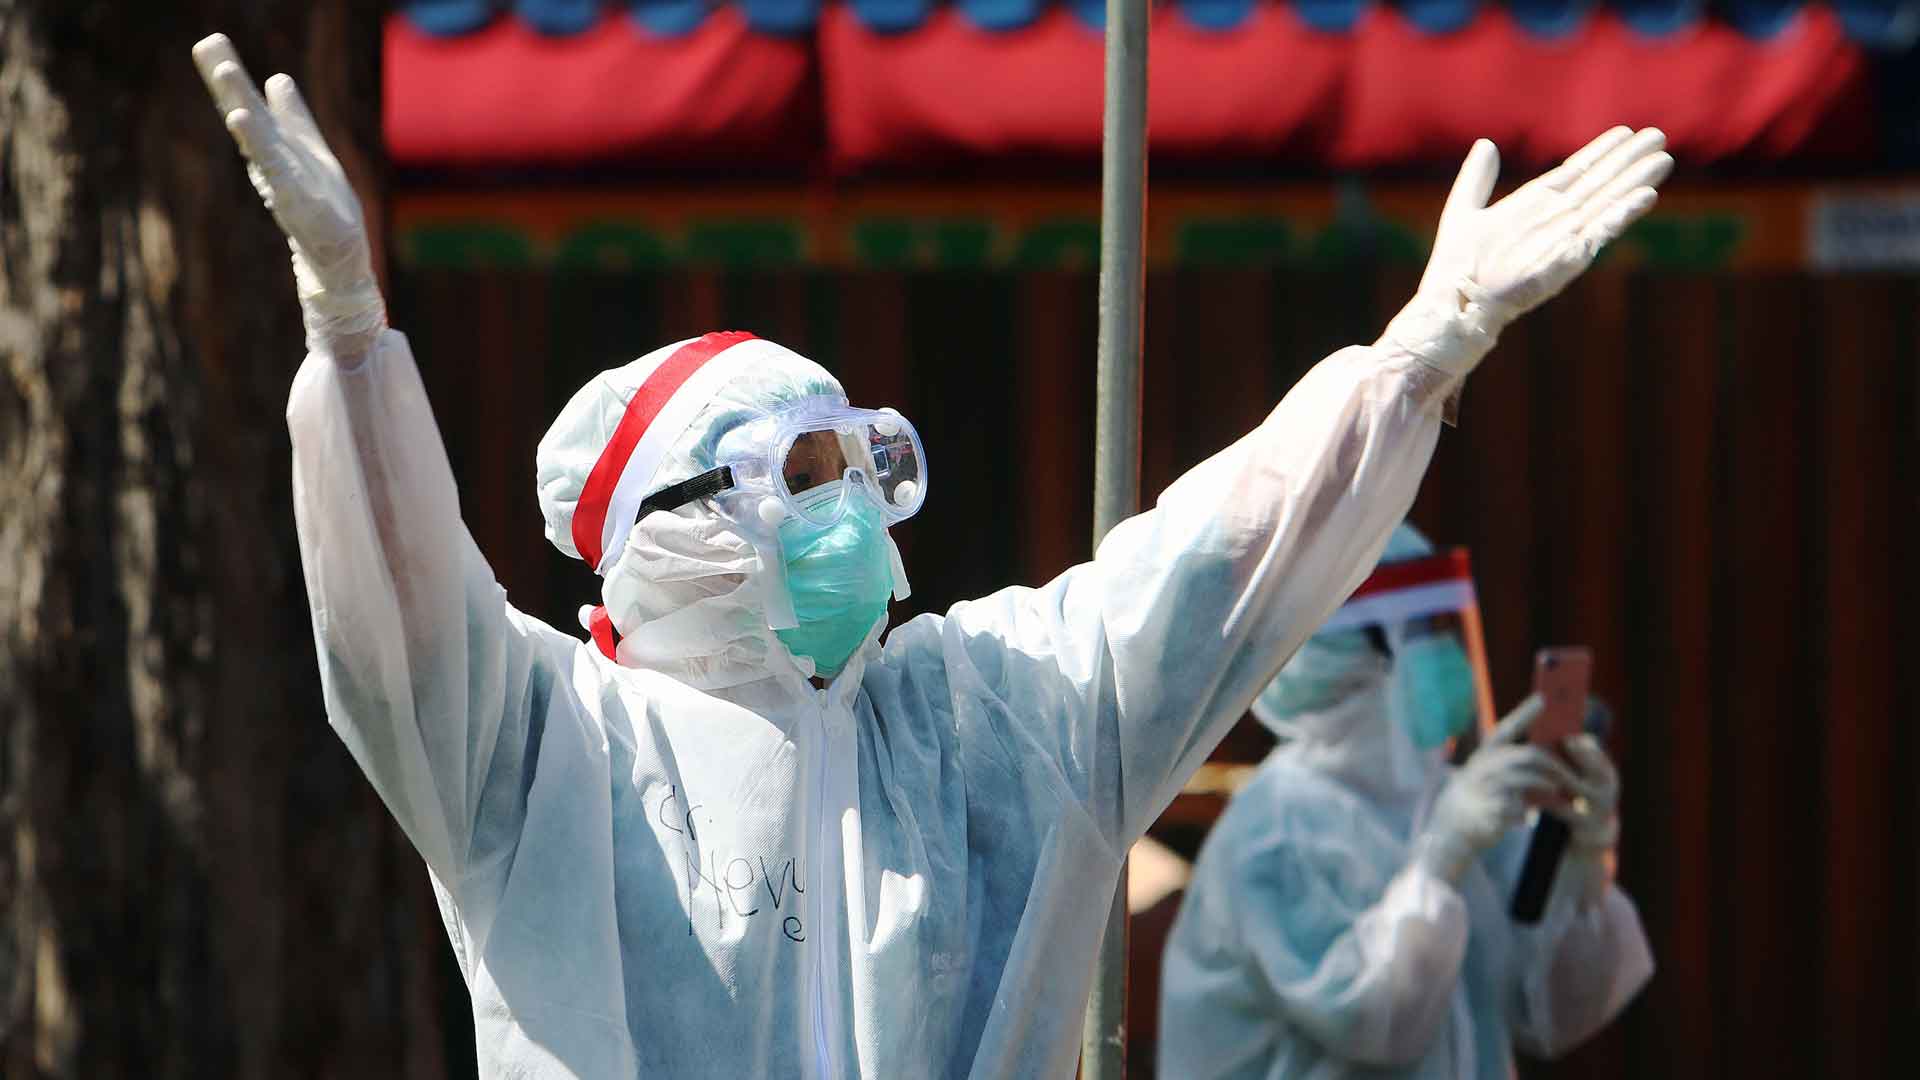 Передача заболевания вышла из-под контроля, подчеркнули индонезийские эпидемиологи Фото: © GLOBAL LOOK press / Budiono